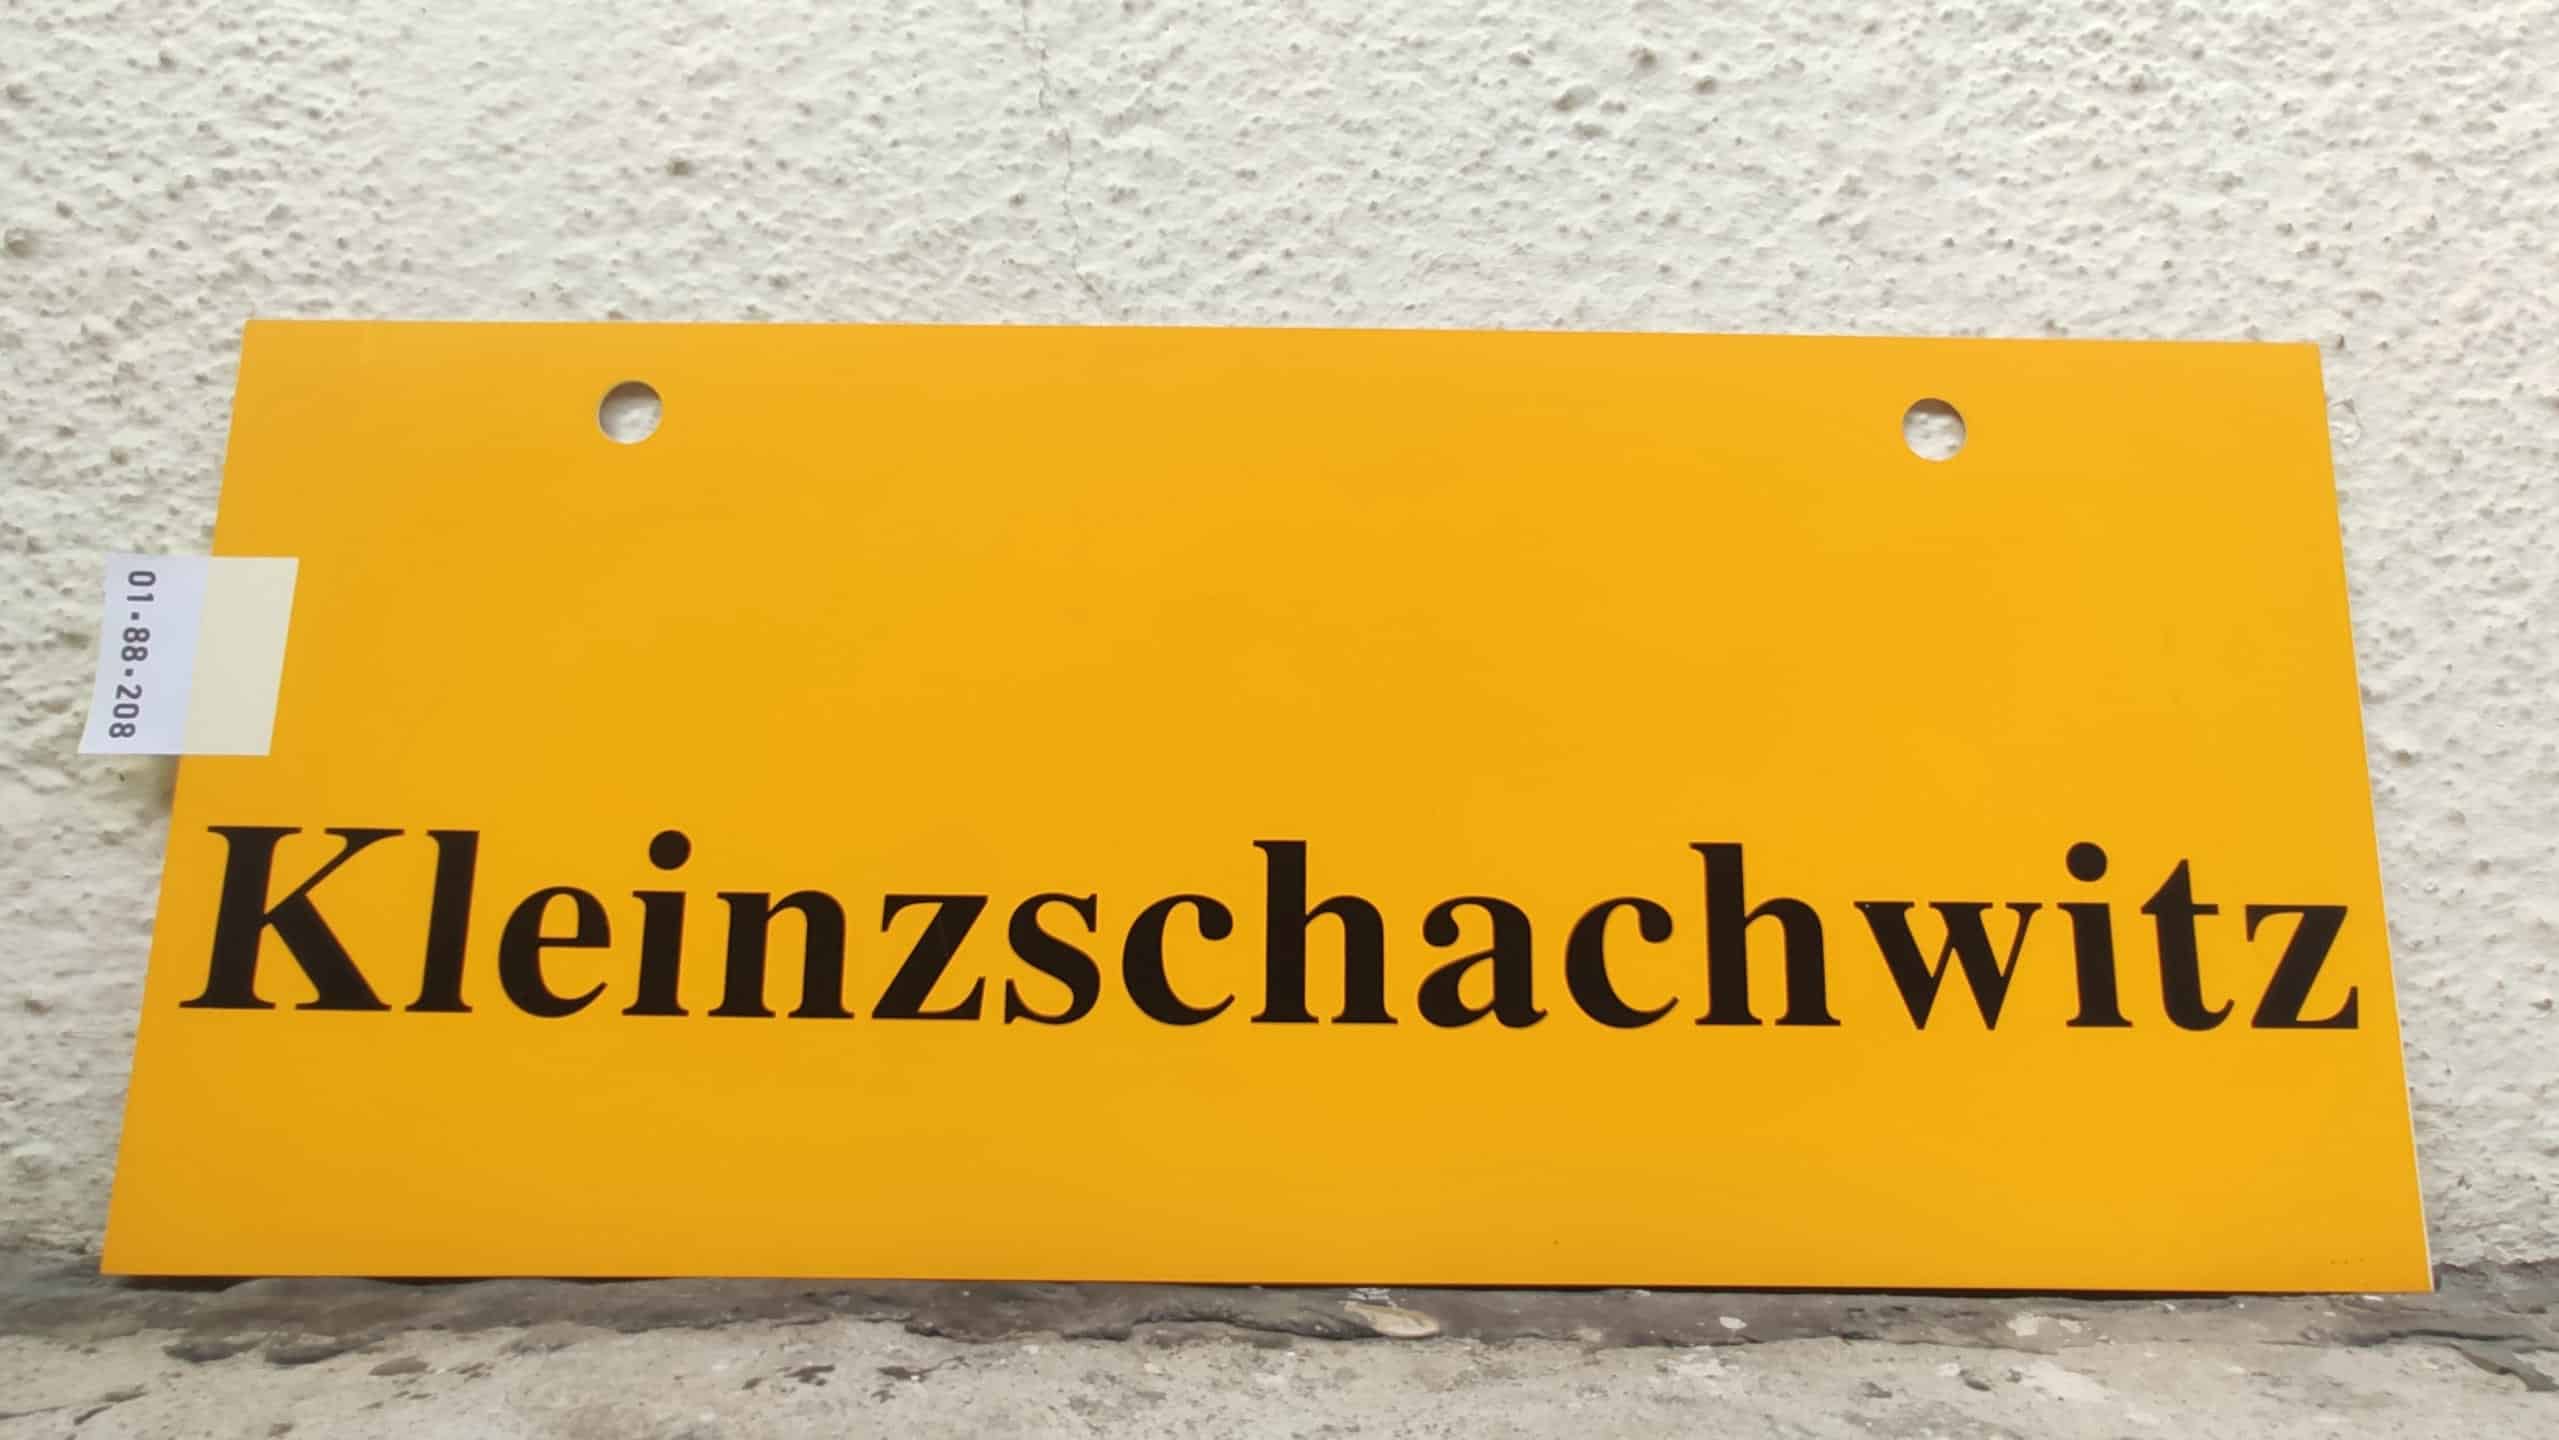 Kleinzschachwitz